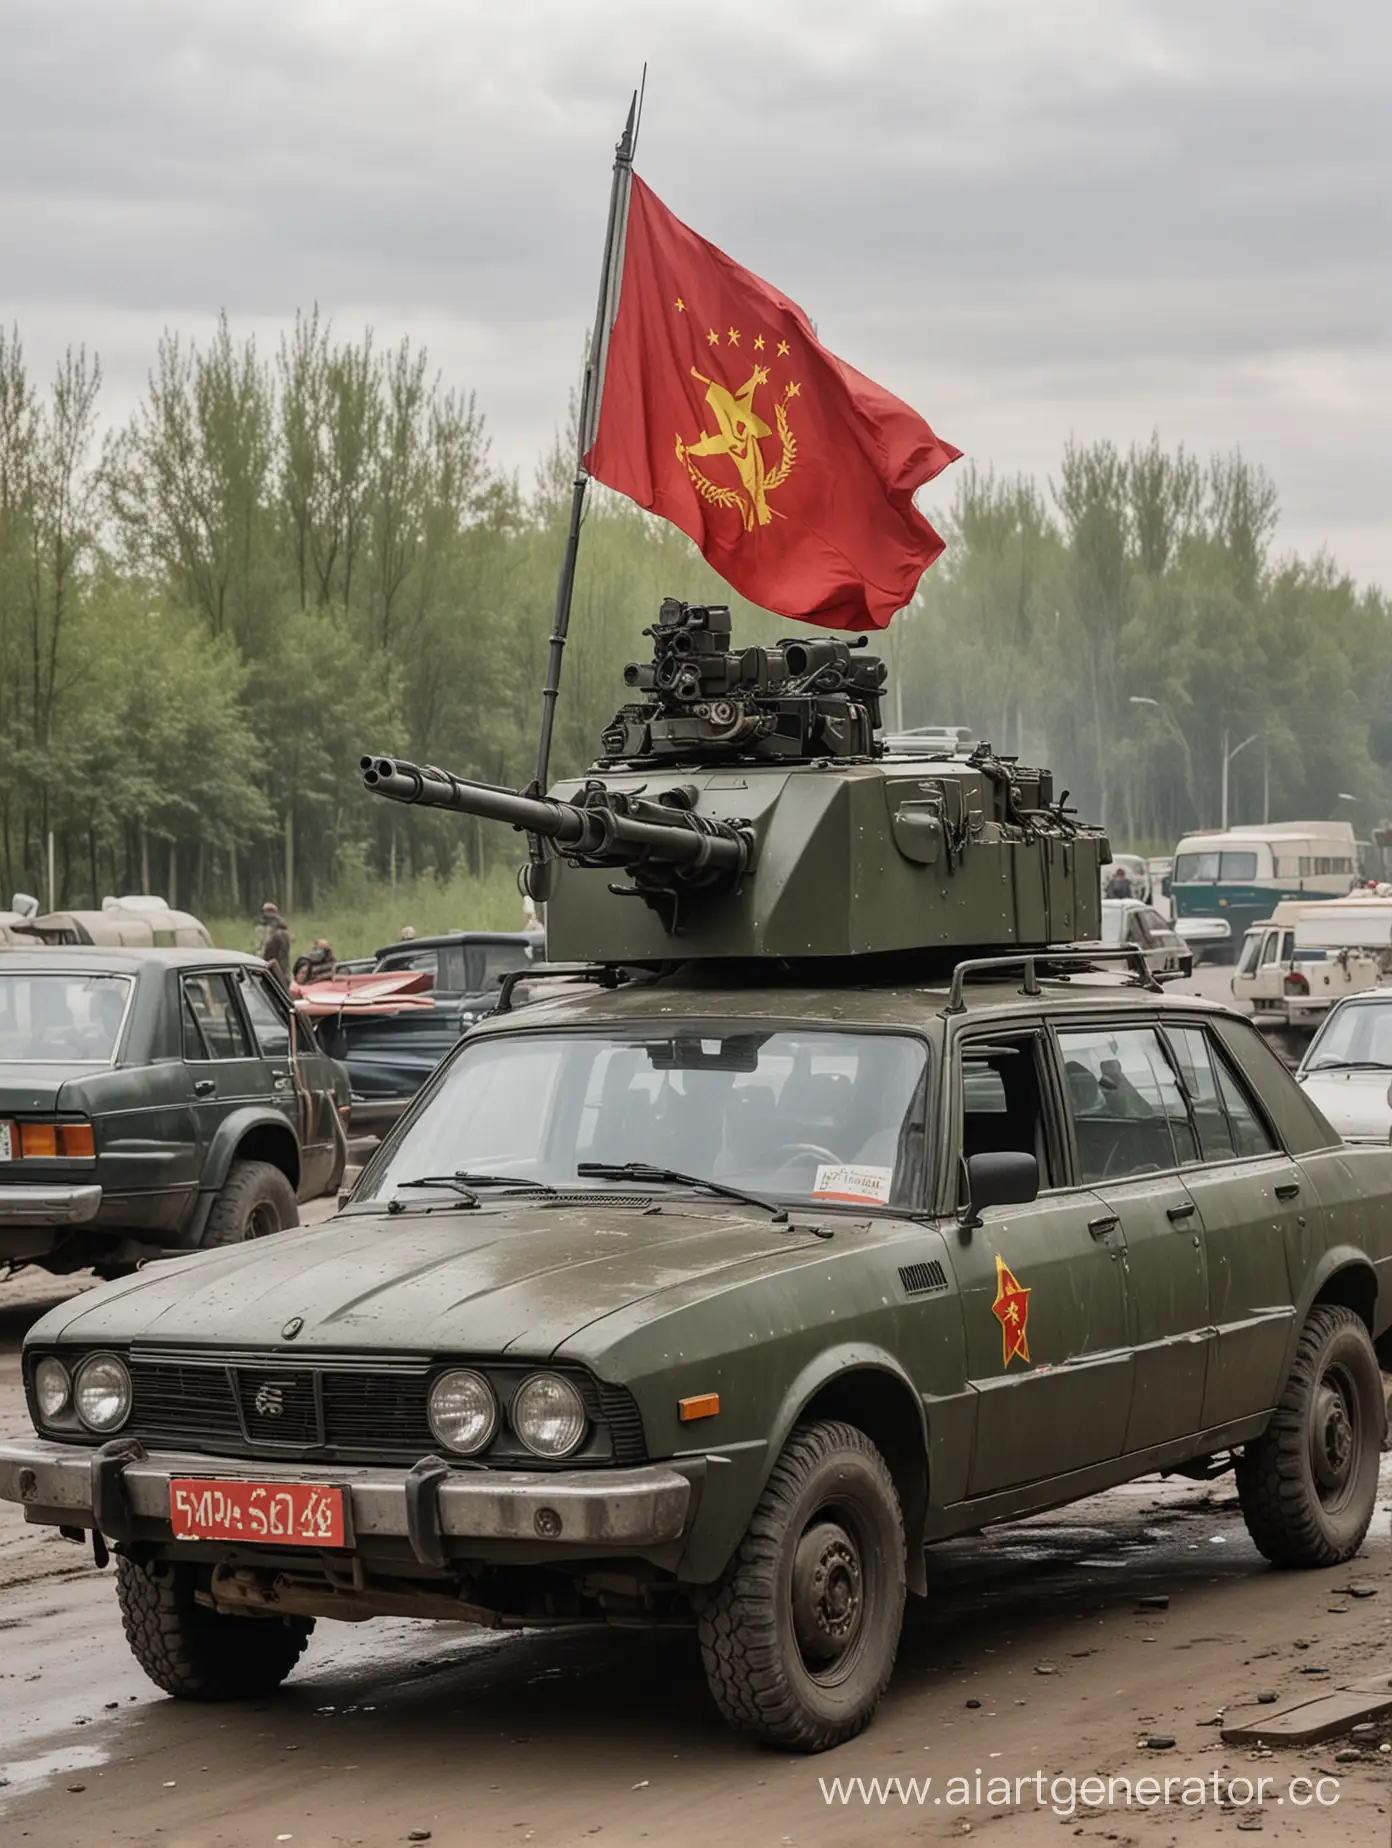 Машина седан с пулеметом на крыше, обшитая бронёй и с советским флагом